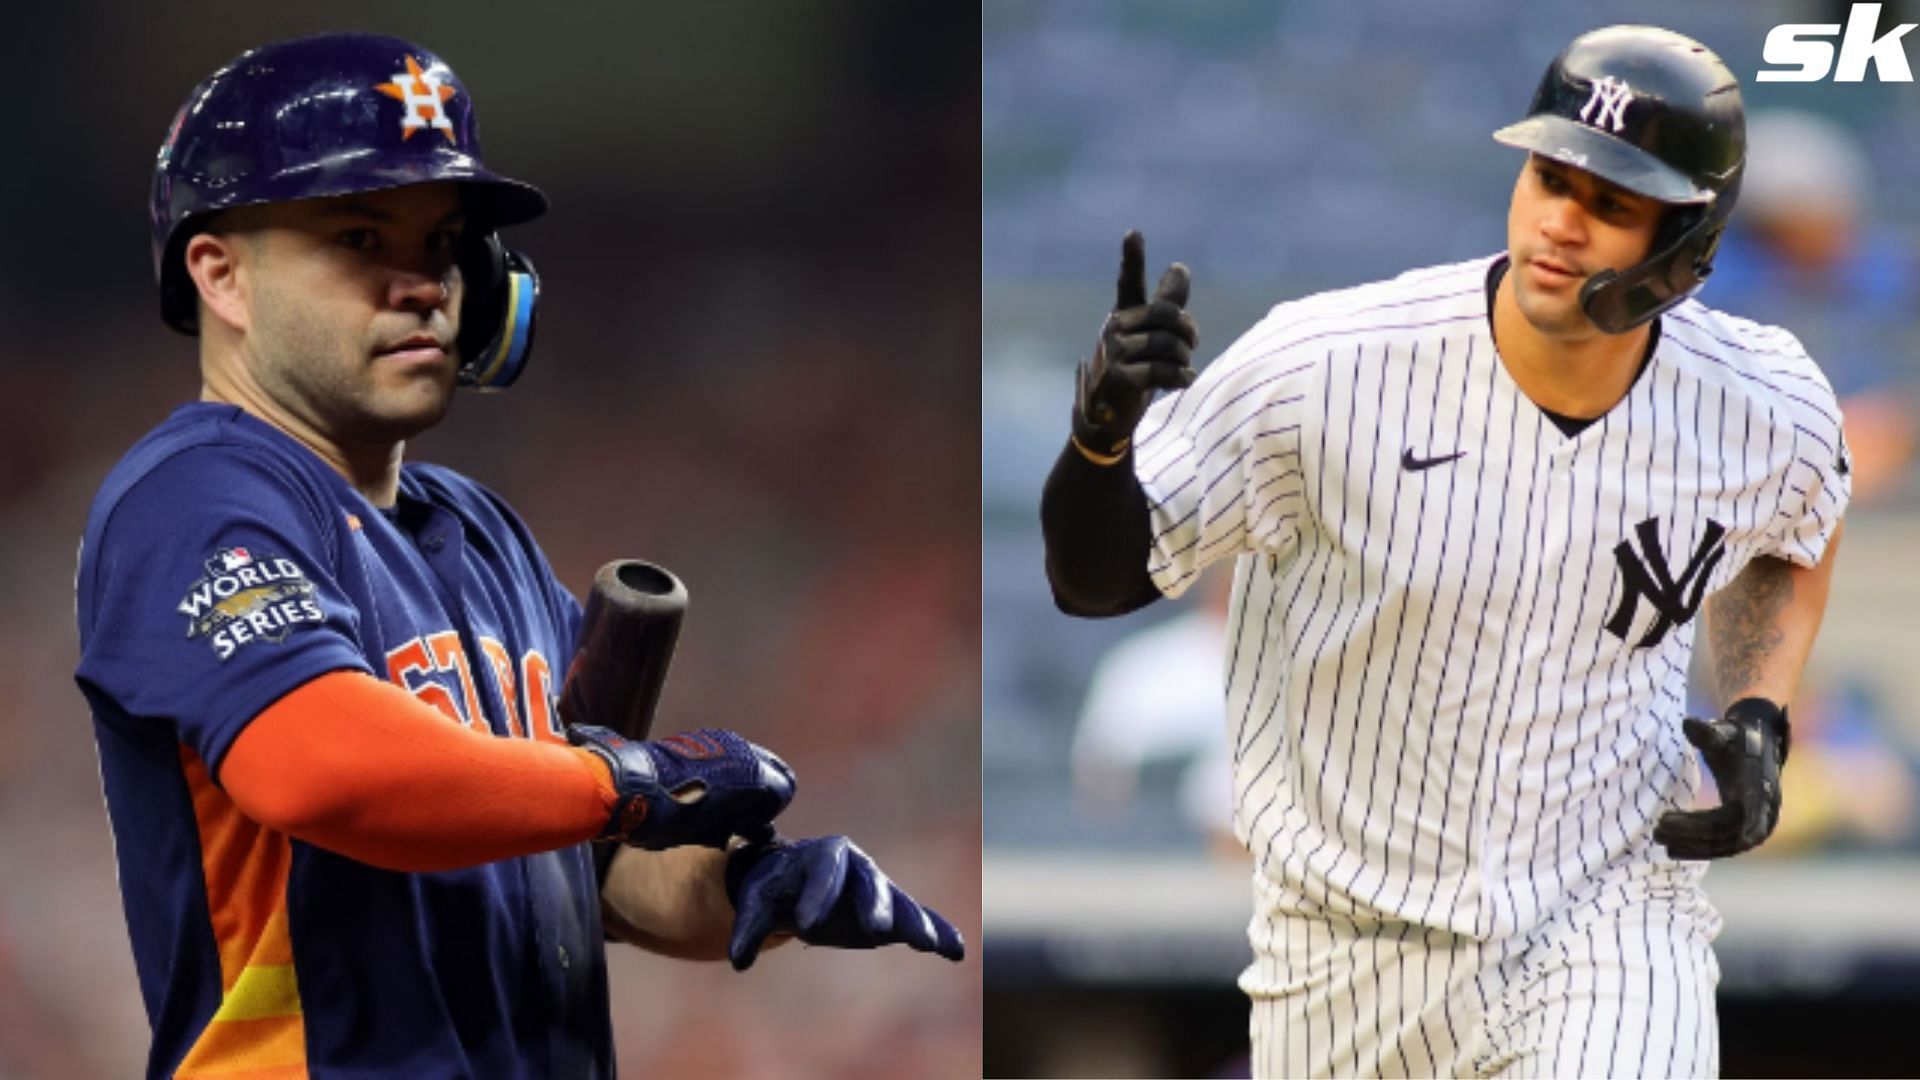 Yankees' Gary Sanchez Takes Shot at Astros' Jose Altuve, 'If I Hit